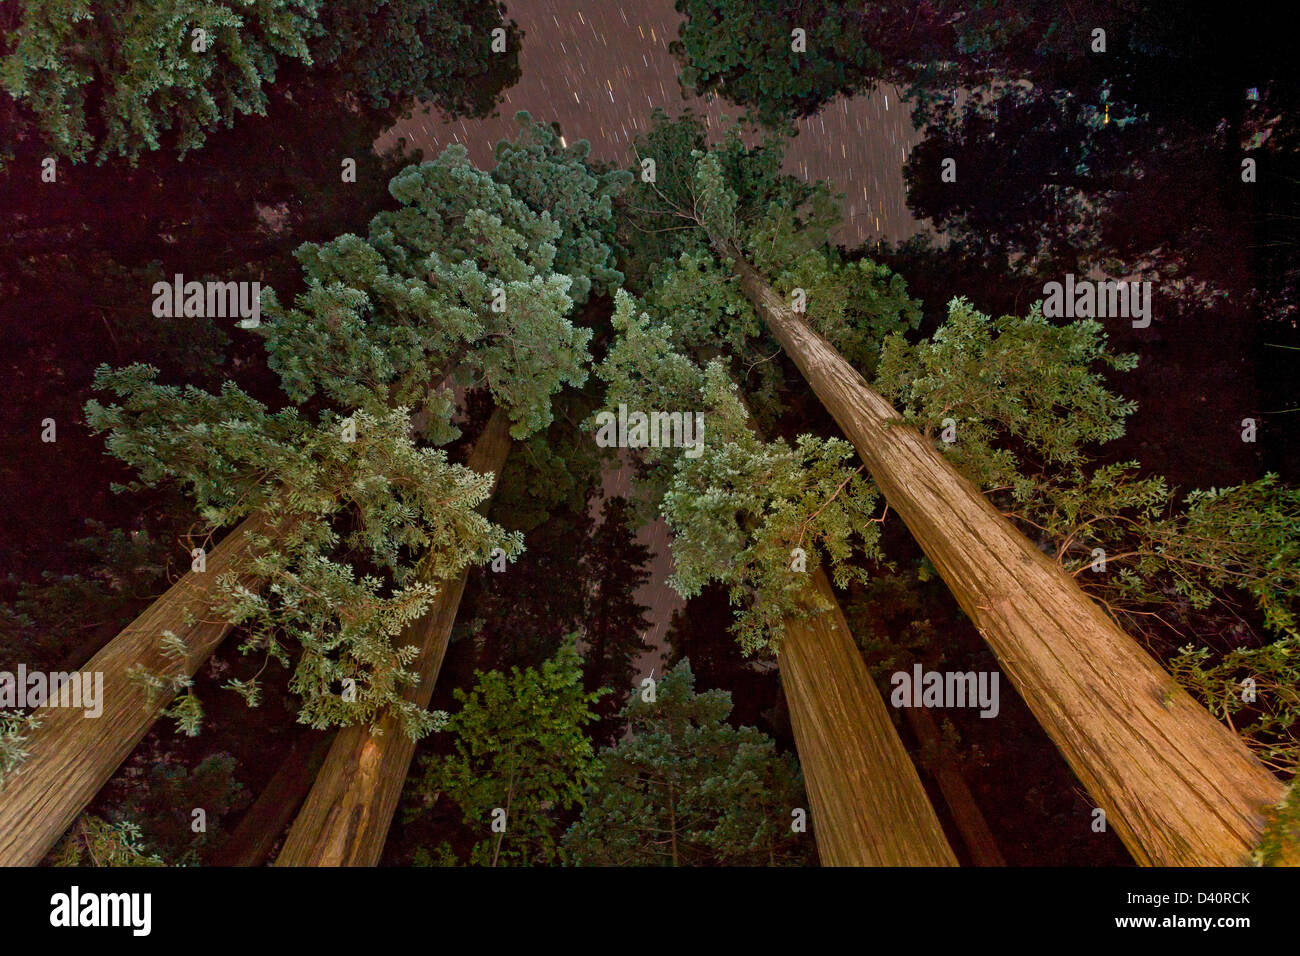 Coast redwood alberi di notte, con cielo stellato; Humboldt Redwoods State Park, California, Stati Uniti d'America Foto Stock